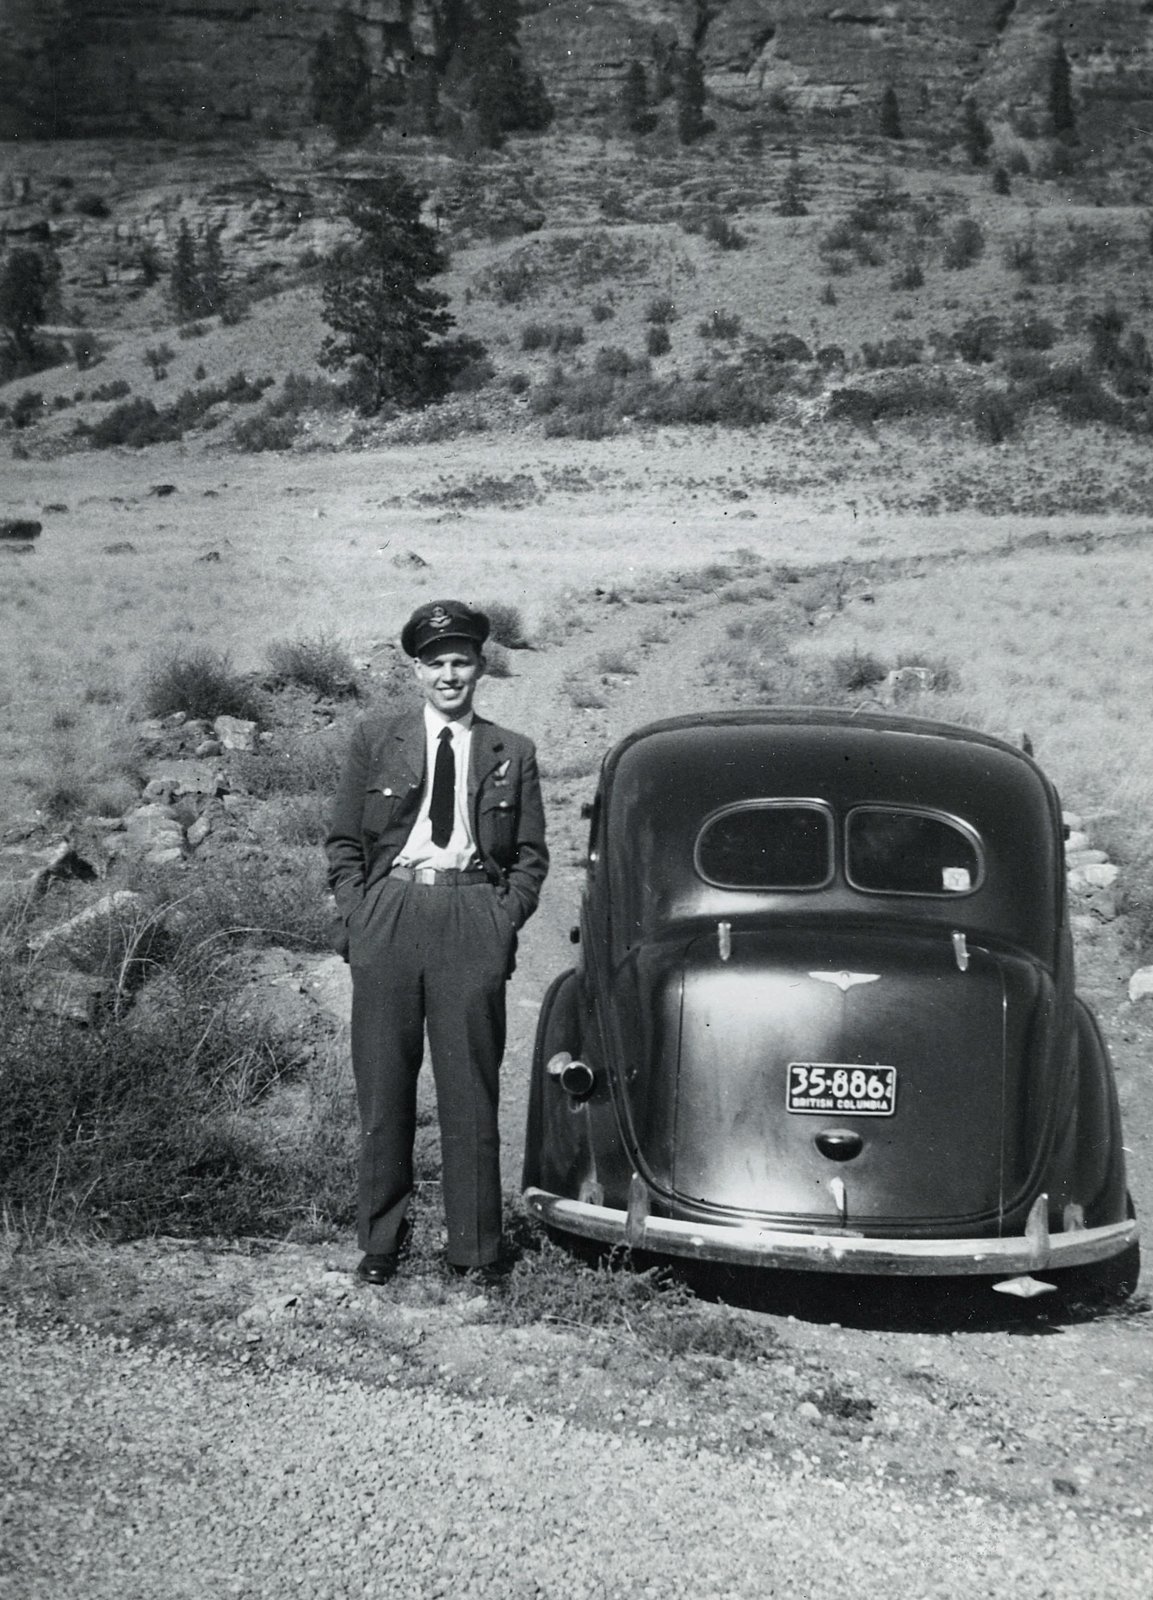 Trevor Schubert in RCAF uniform beside car,Second World War.